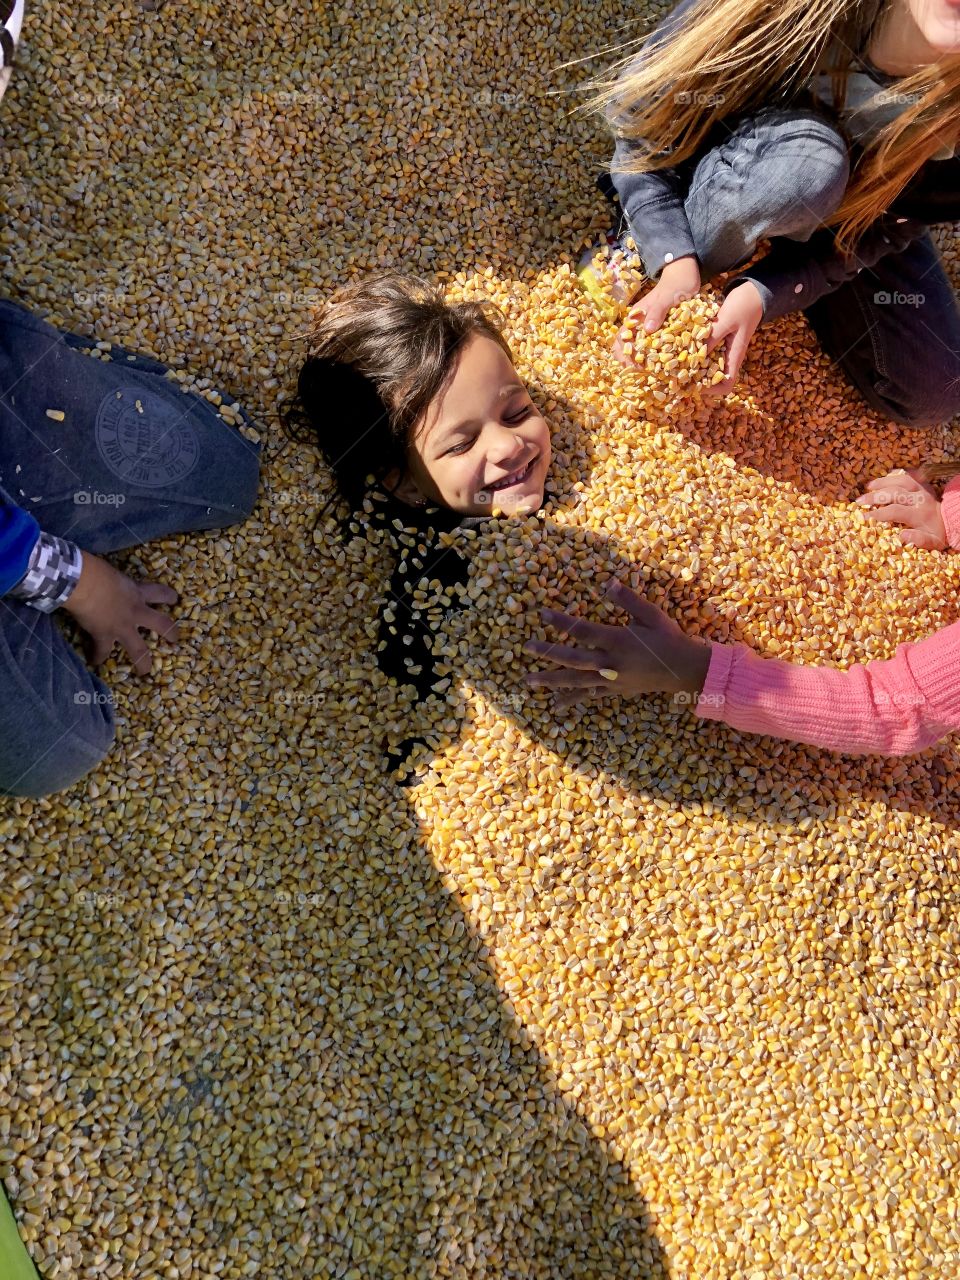 Playing in corn